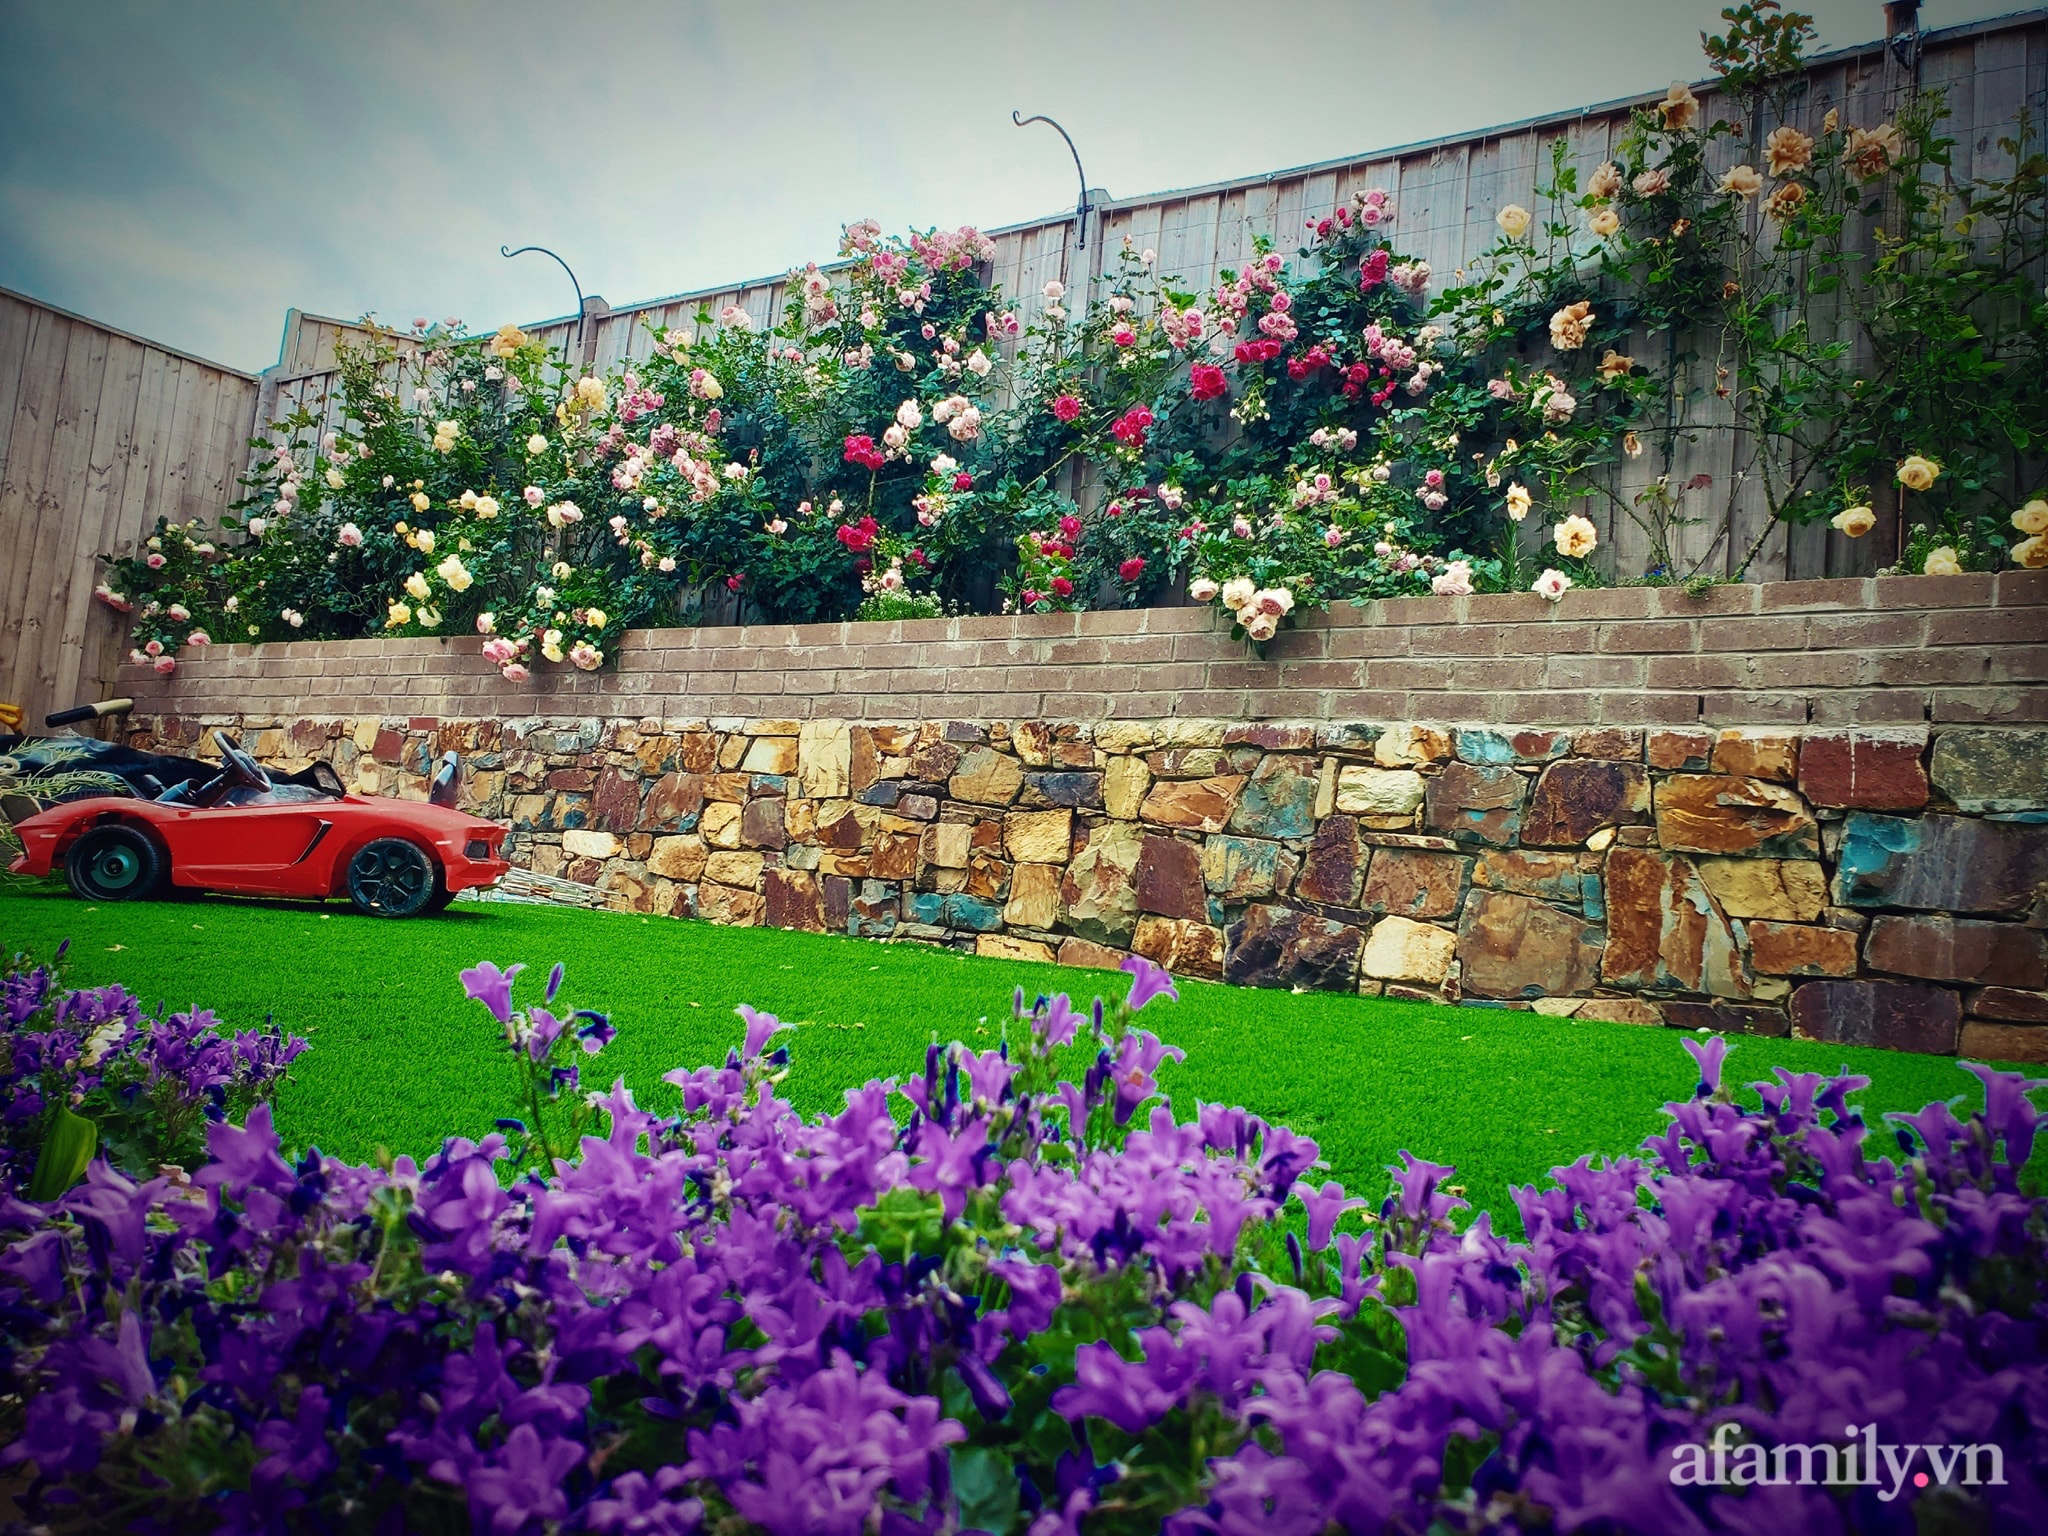 Vườn hồng 250m² ngát hương rực rỡ sắc màu đẹp như cổ tích của mẹ Việt ở Úc - Ảnh 12.